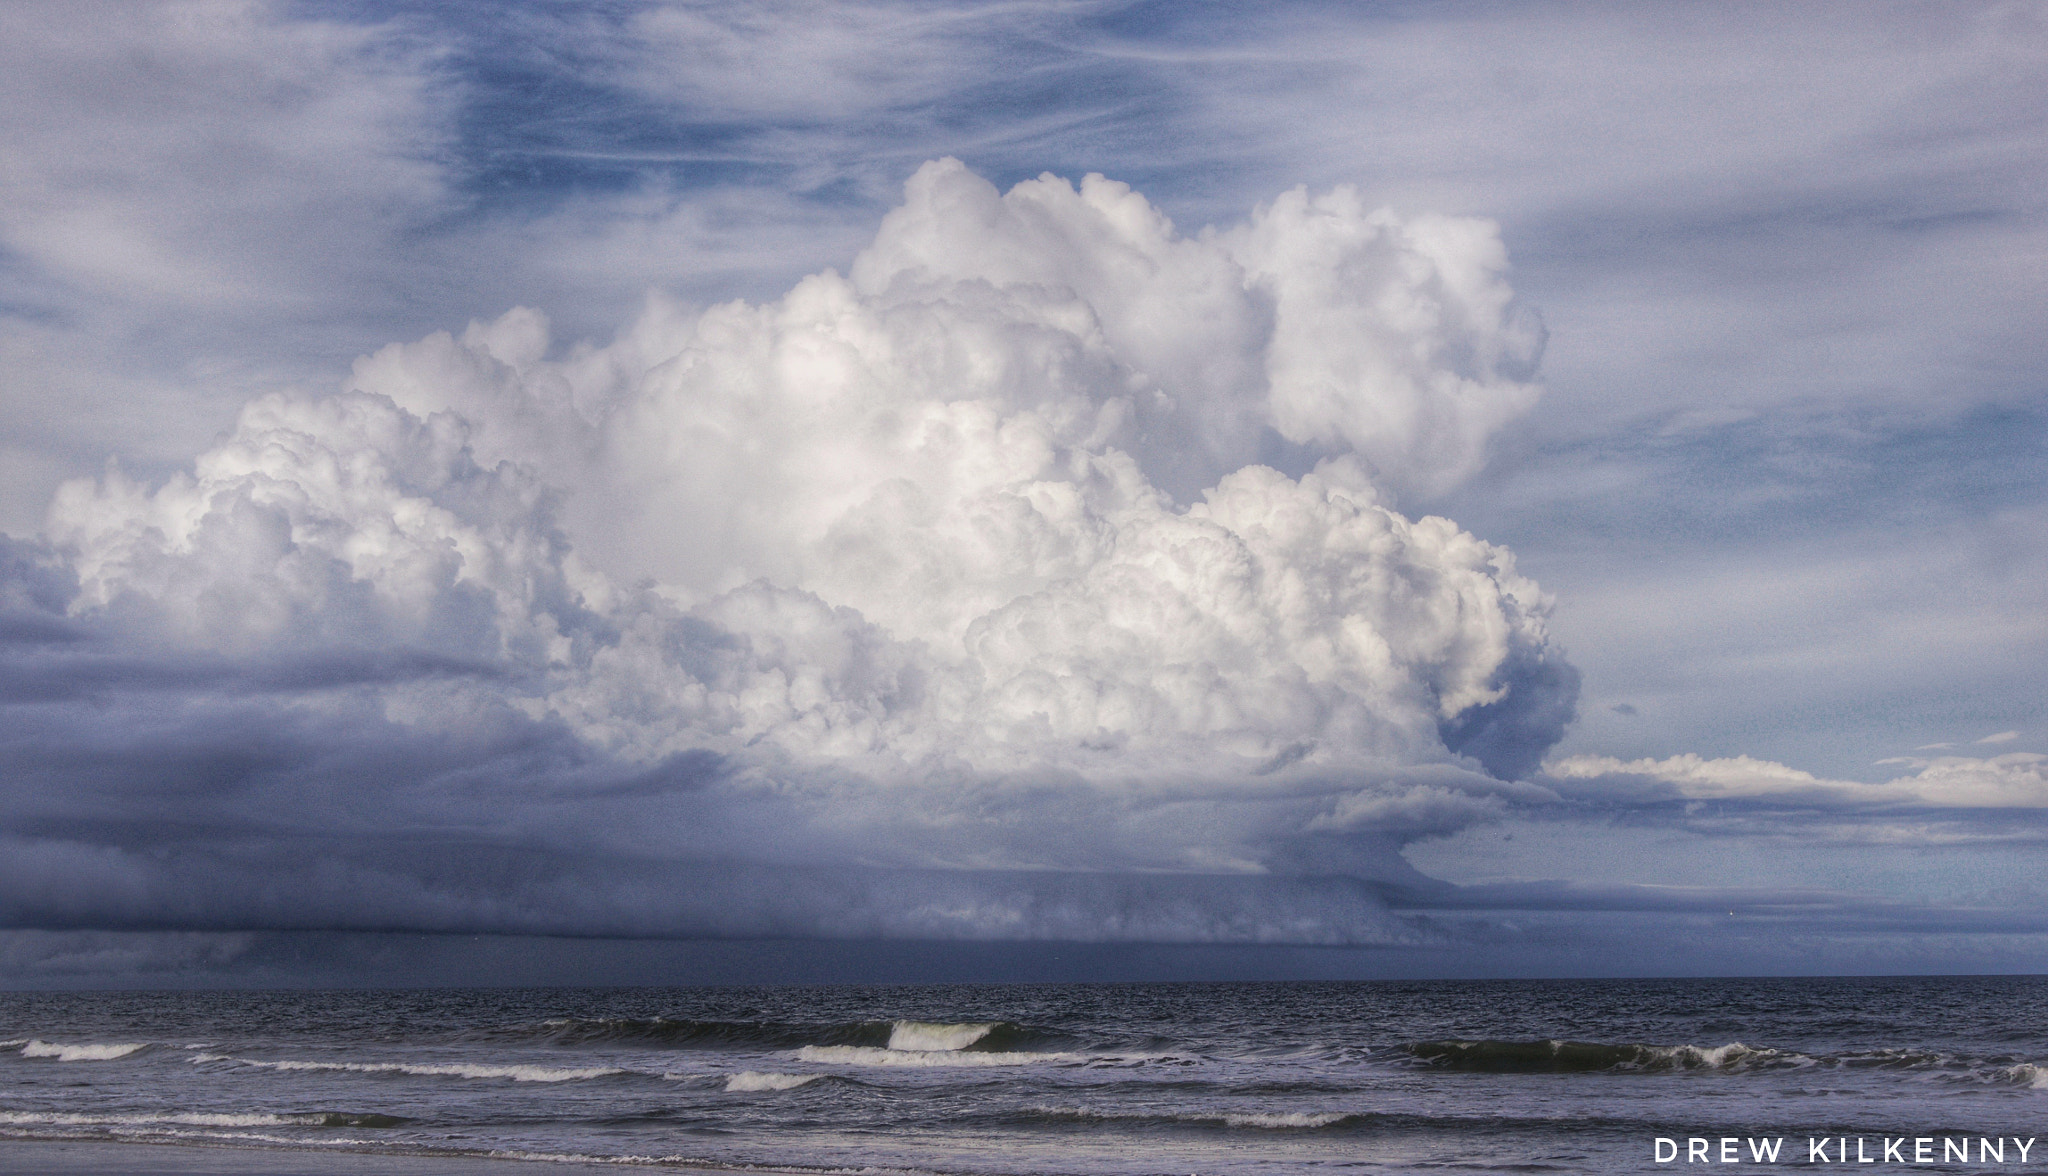 Sony SLT-A33 sample photo. Really nice cloud over the ocean photography